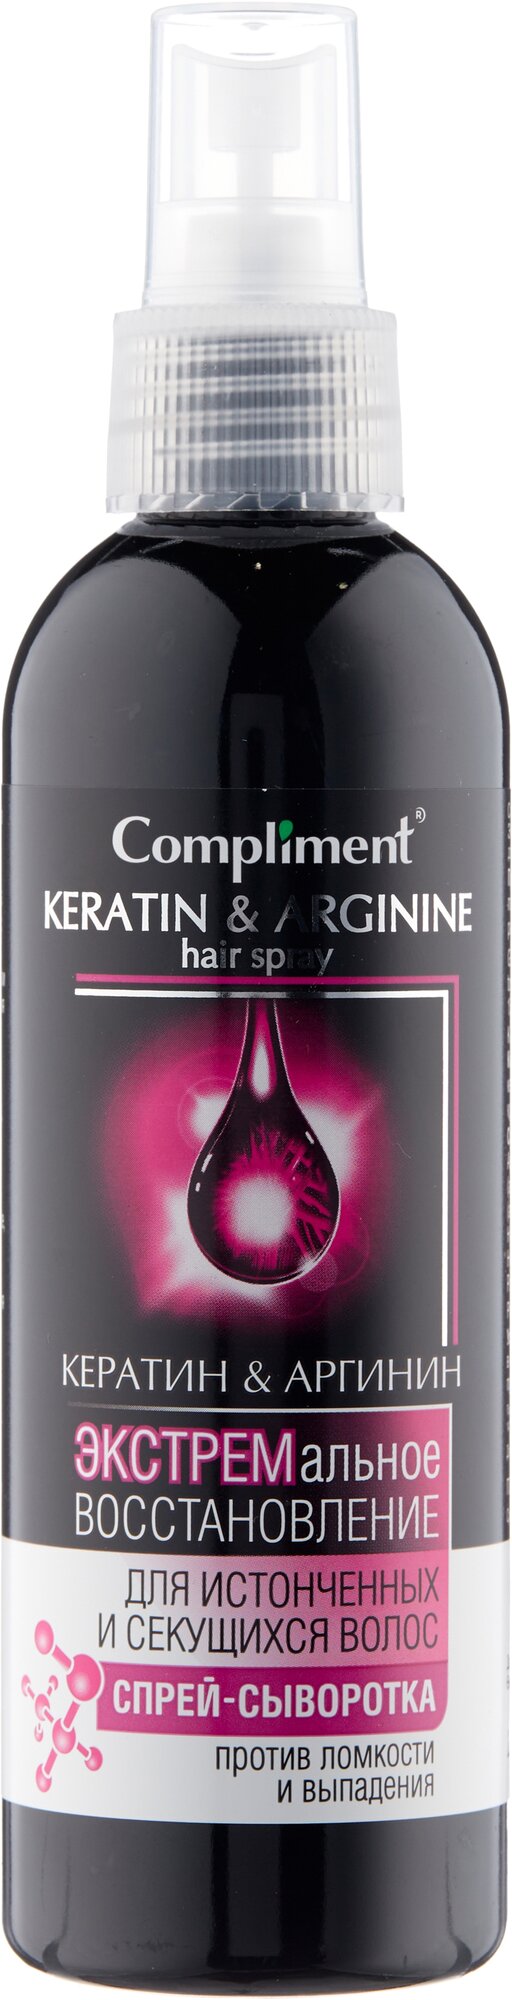 Compliment Кератин & Аргинин Спрей-сыворотка экстремальное восстановление для истонченных и секущихся волос, 200 мл